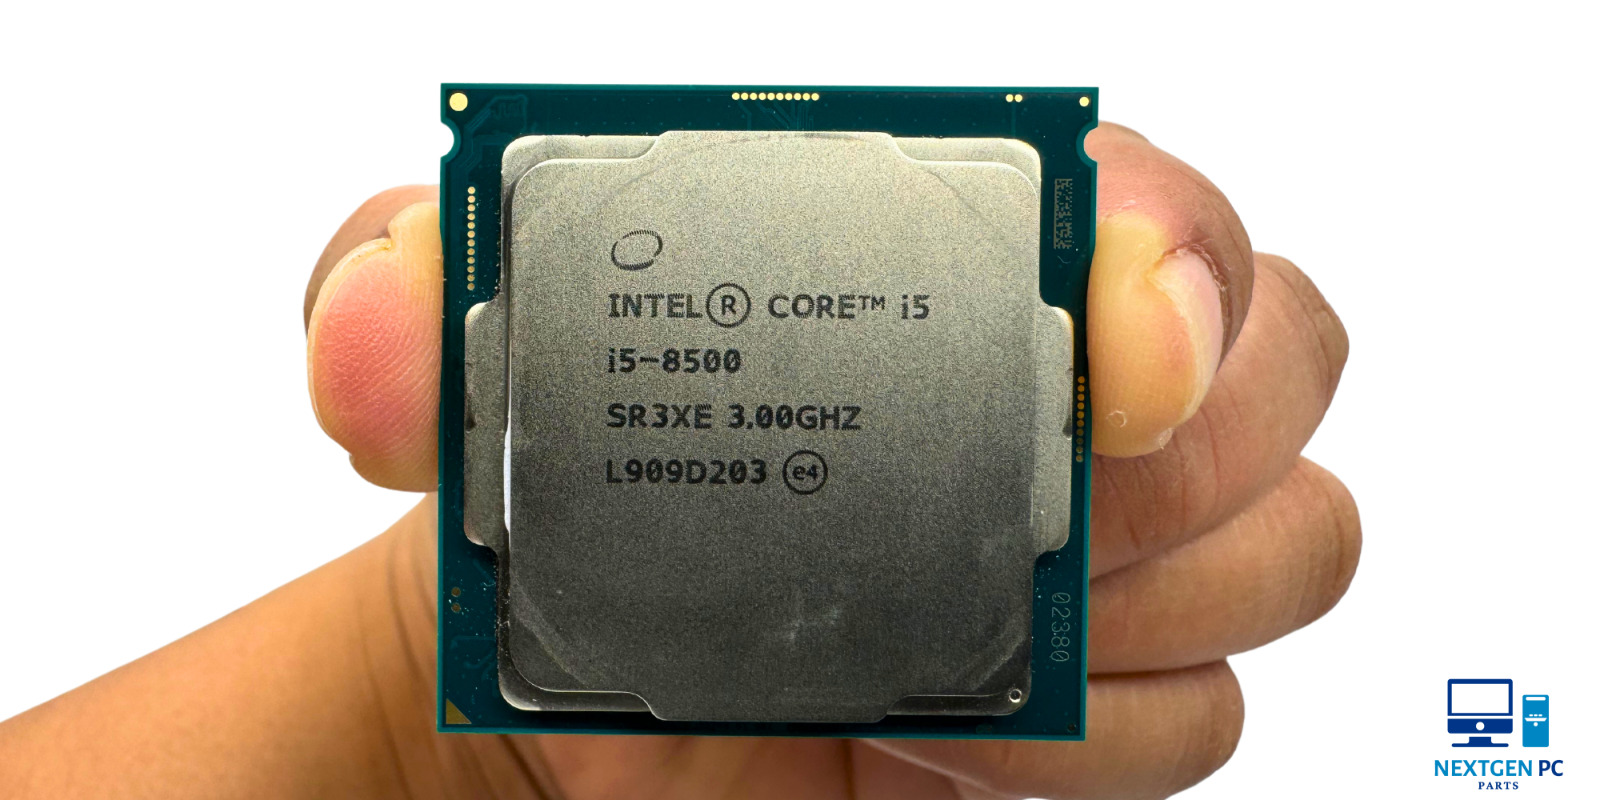 Intel Core i5-8500 3.0GHz SR3XE 6-Core CPU Processor